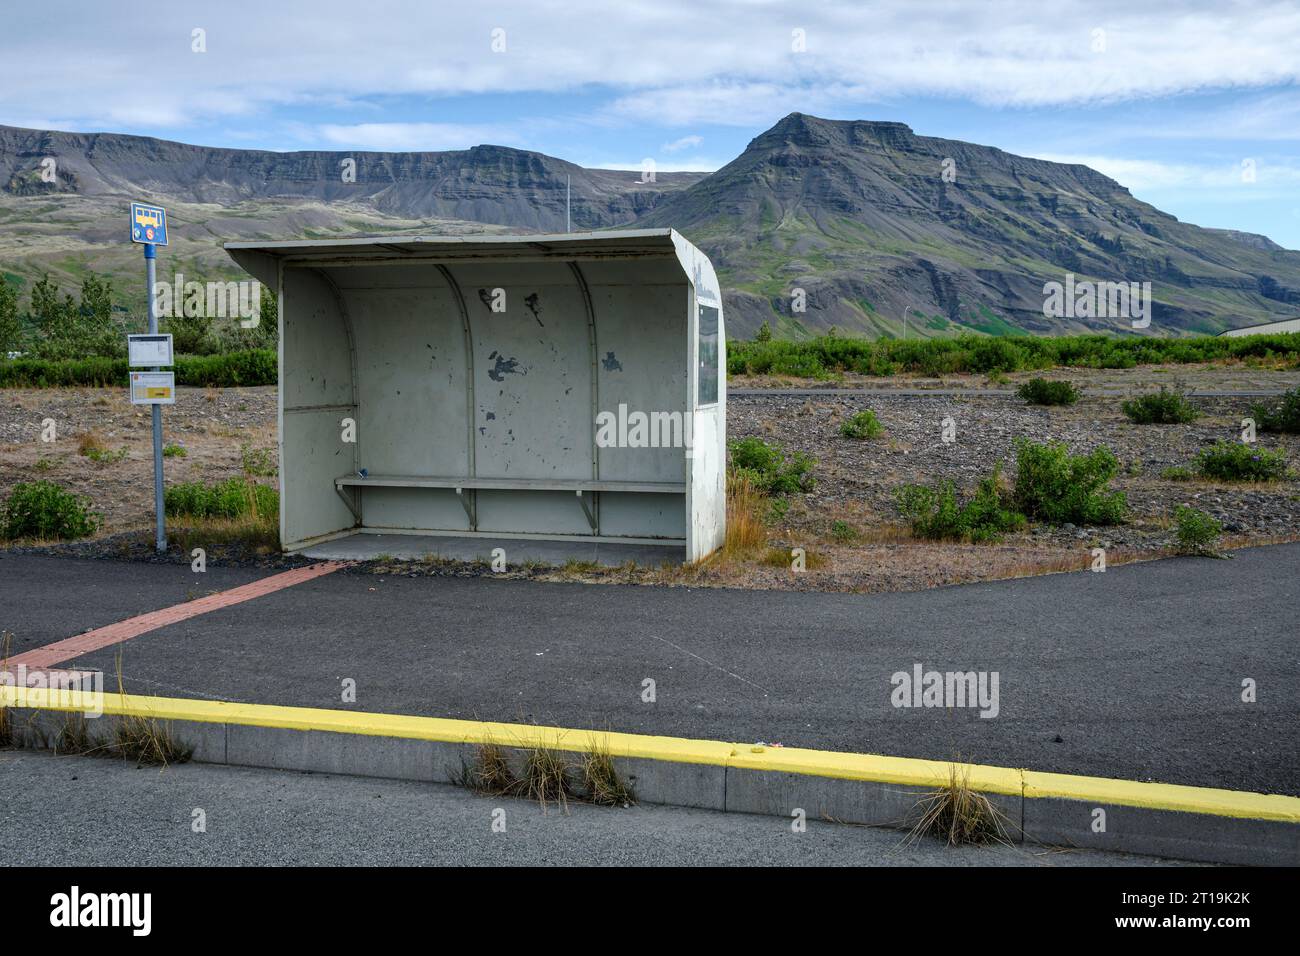 Bus stop near Mosfellsbær, Iceland Stock Photo